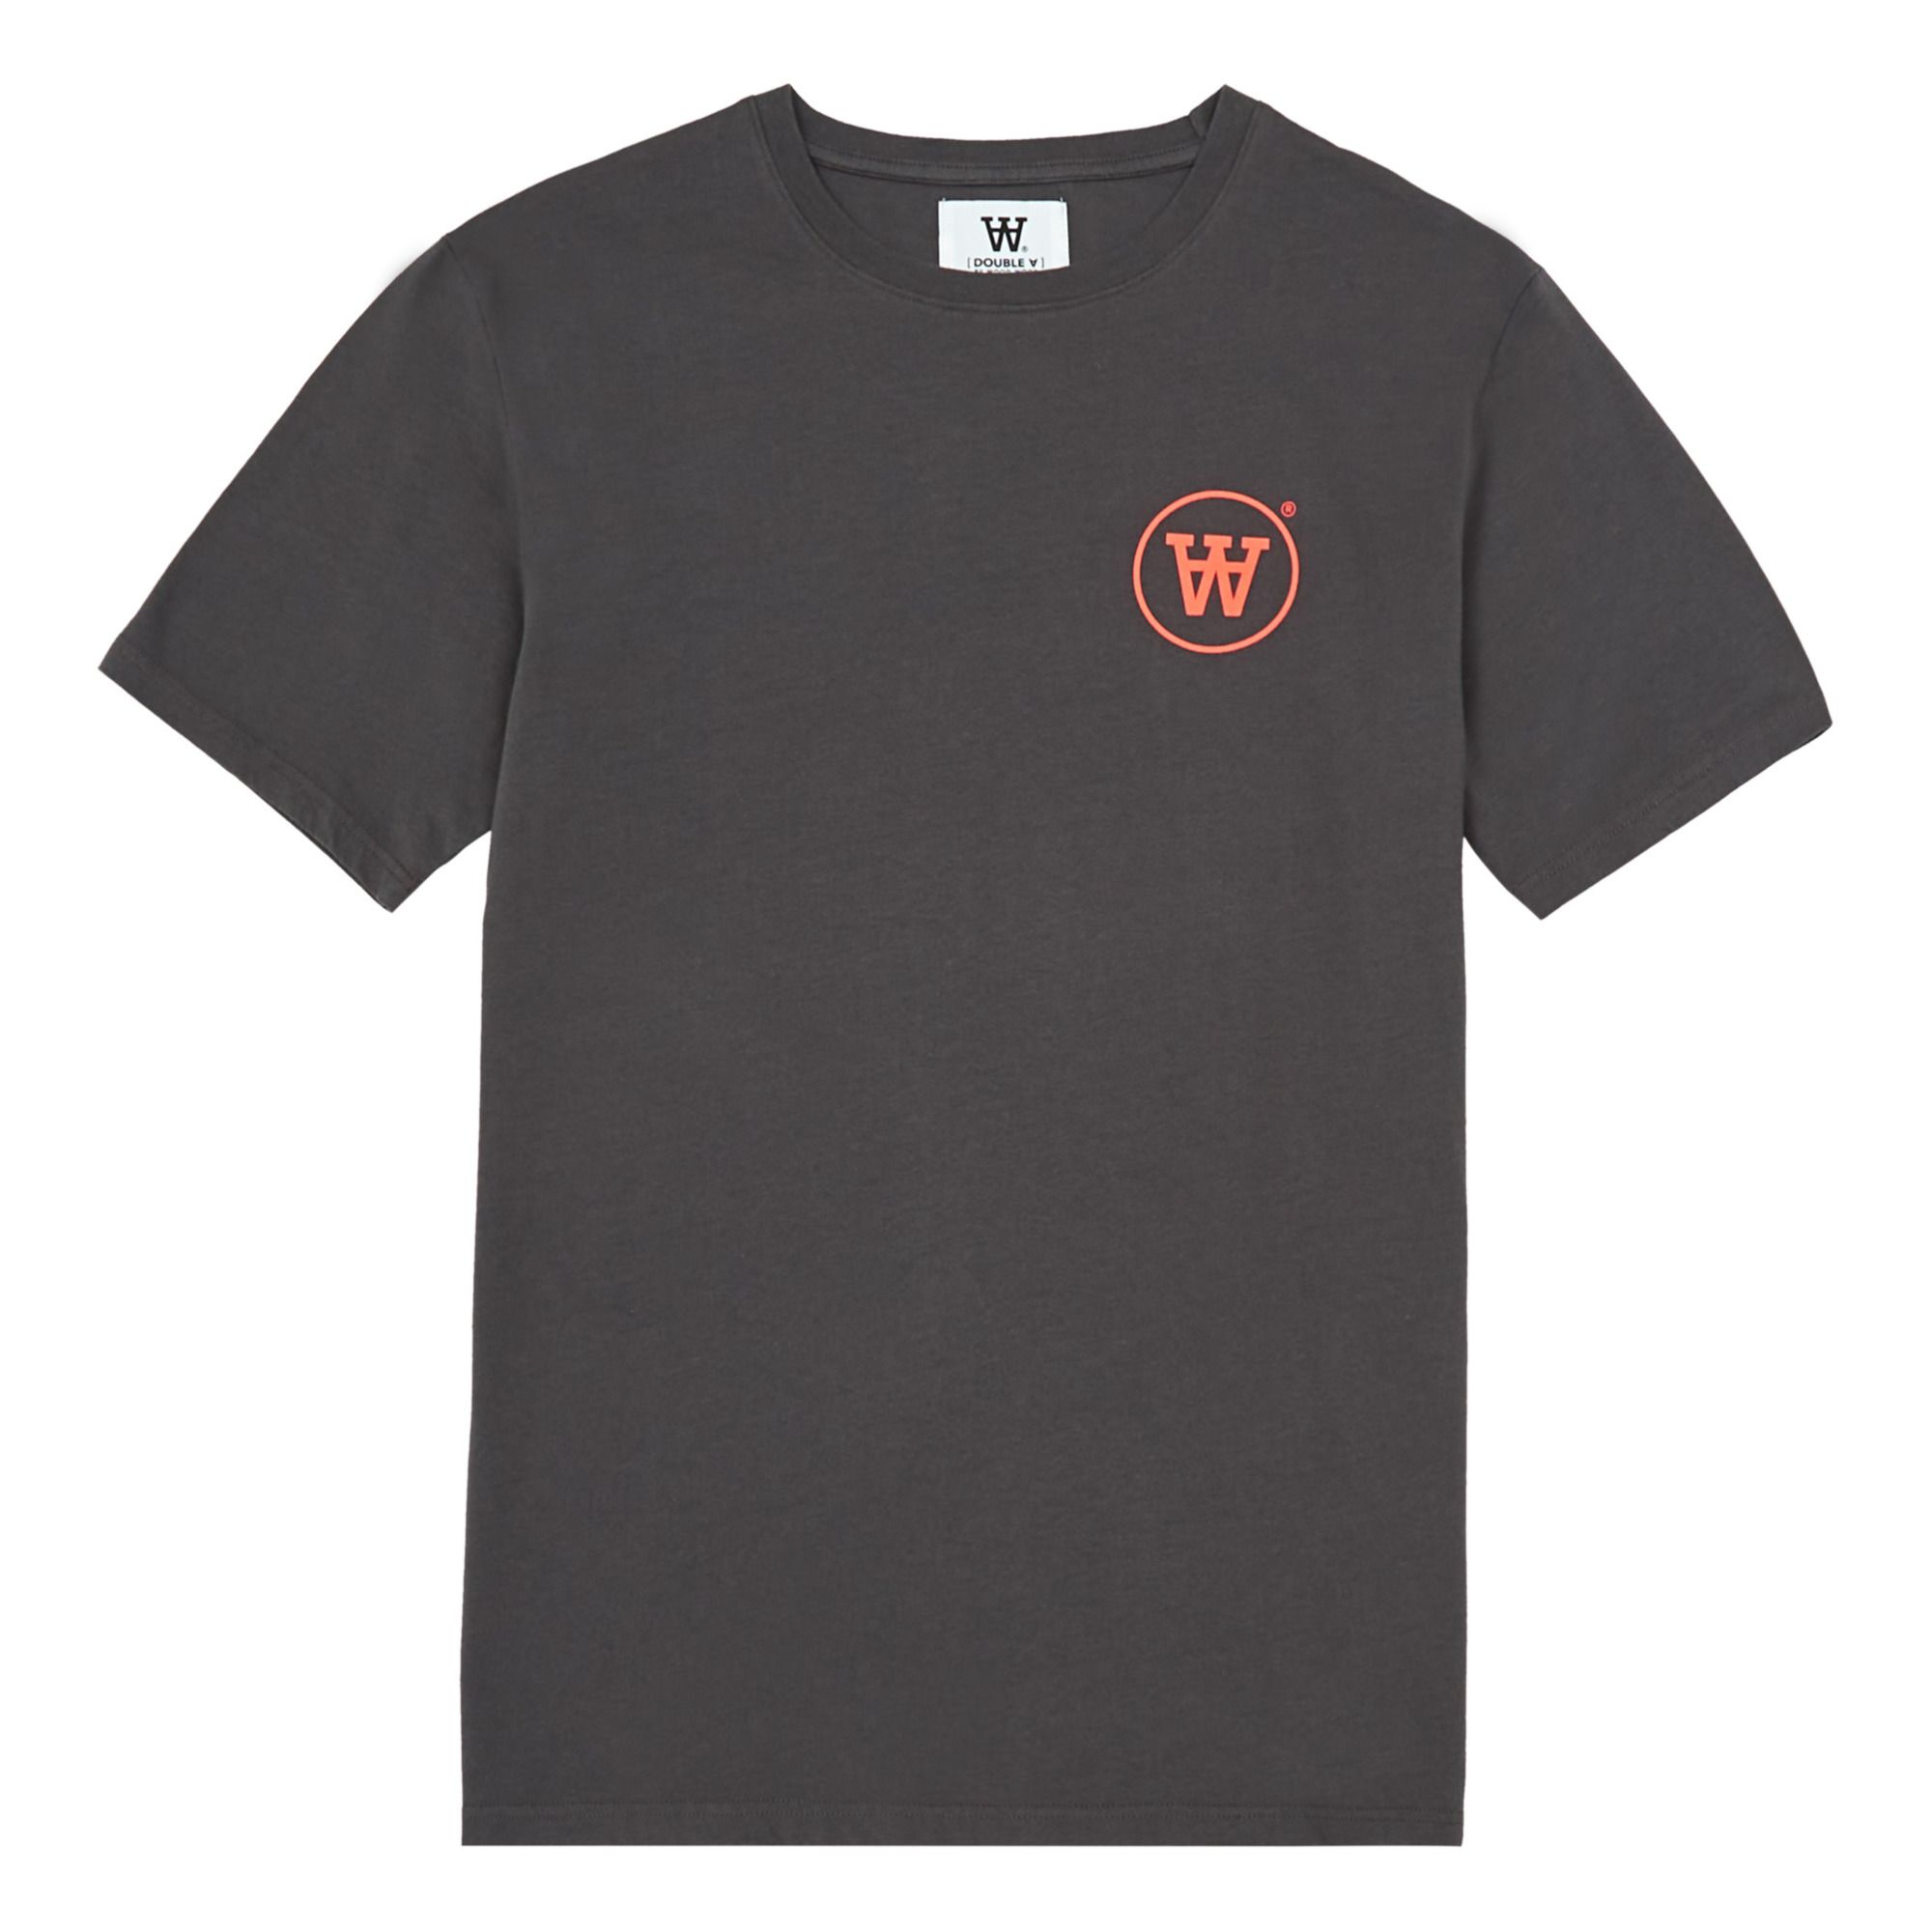 Wood Wood - T-shirt Ace Logo Coton Bio - Collection Adulte - - Homme - Gris foncé